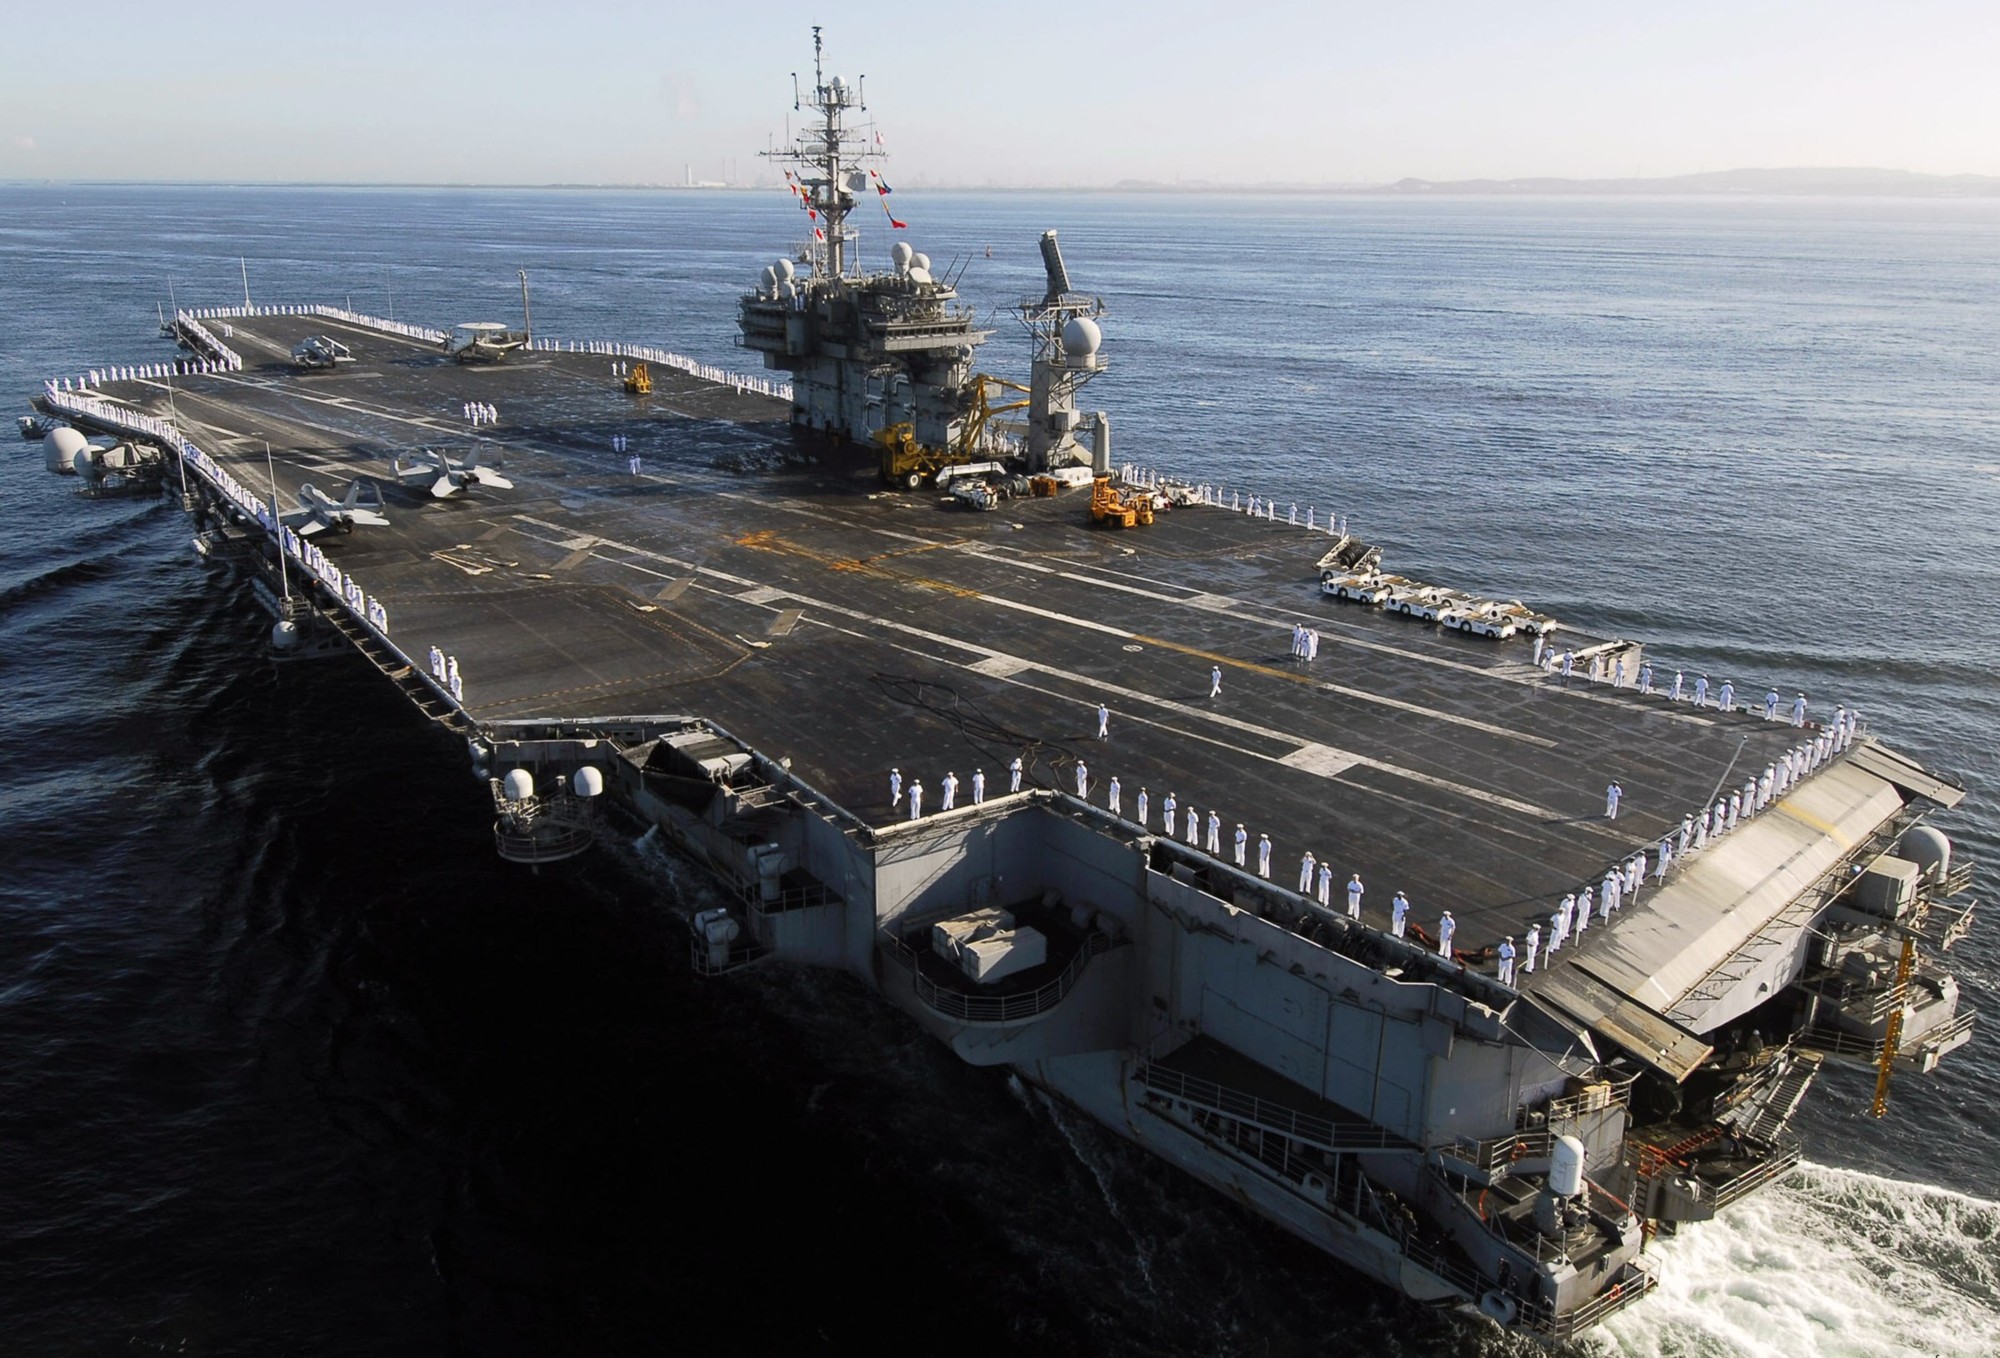 cv-63 uss kitty hawk aircraft carrier us navy 91